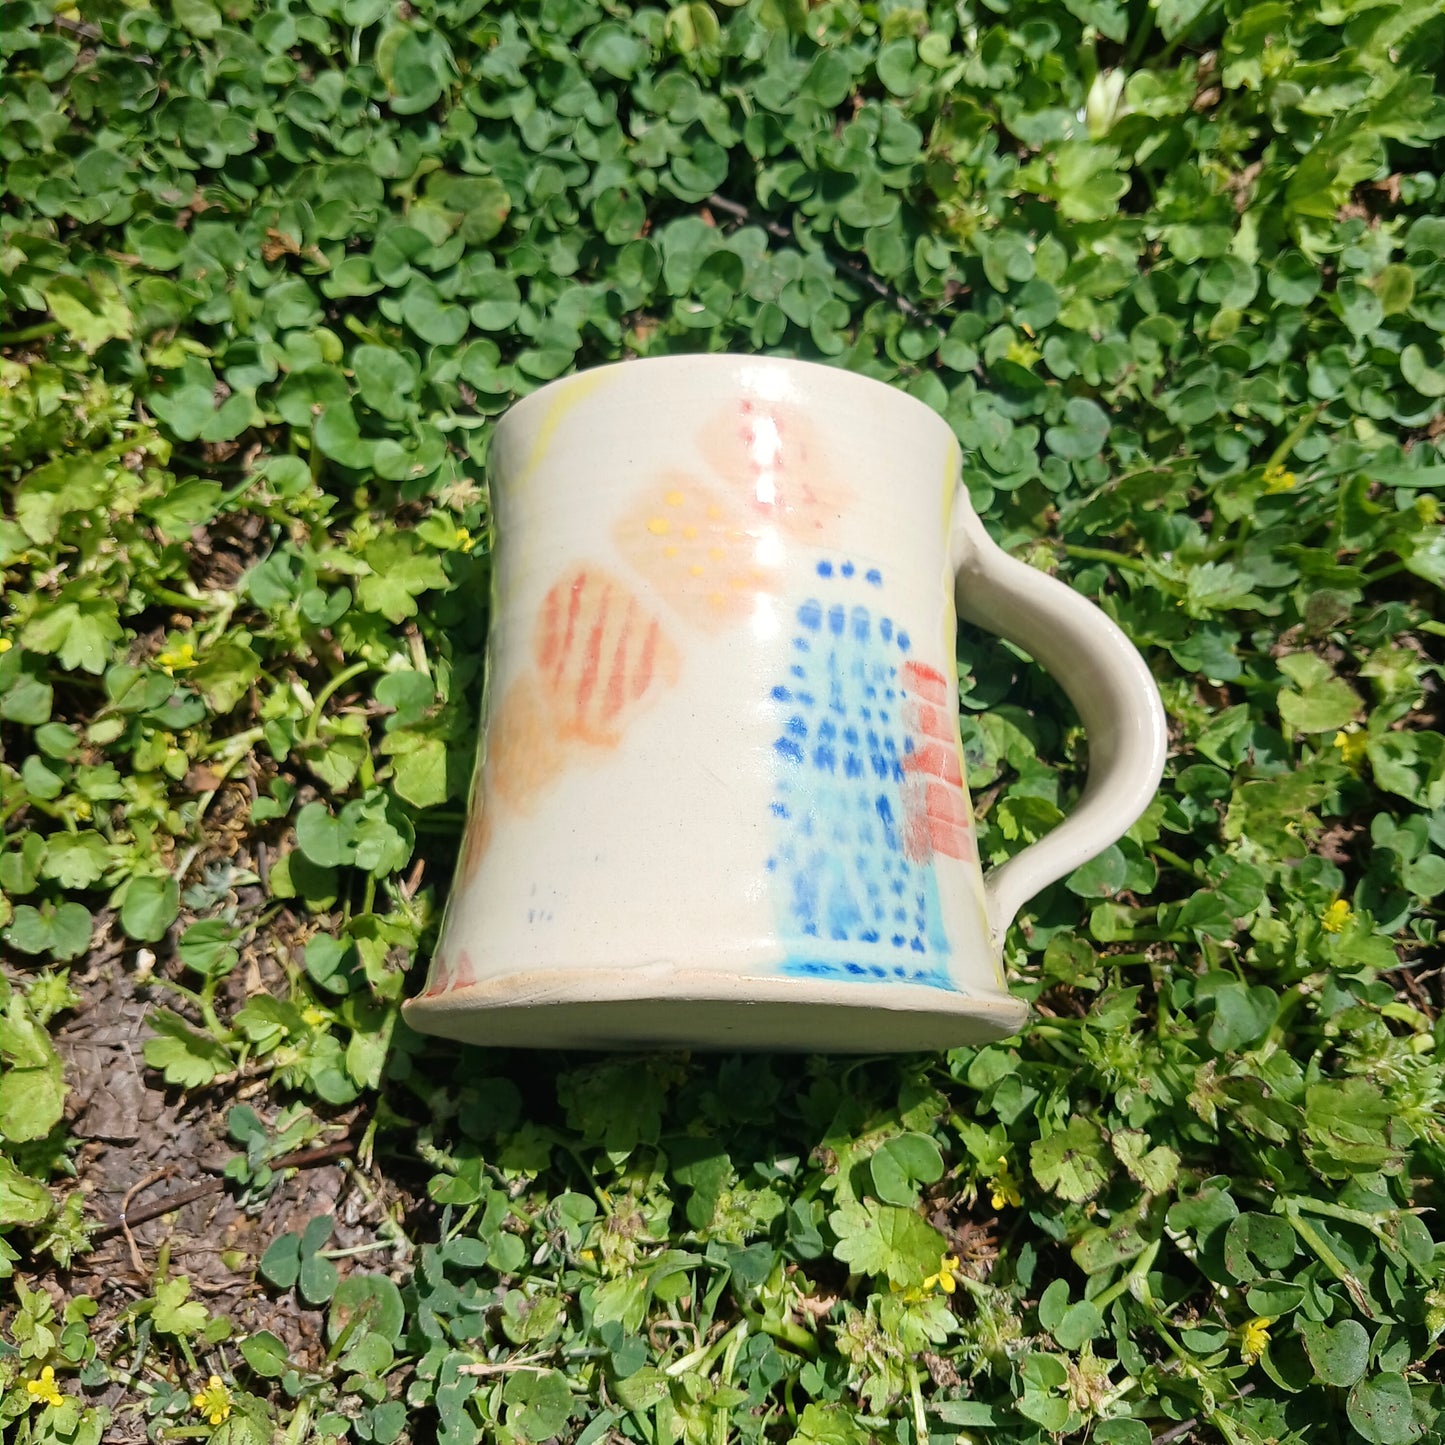 Clay big cup